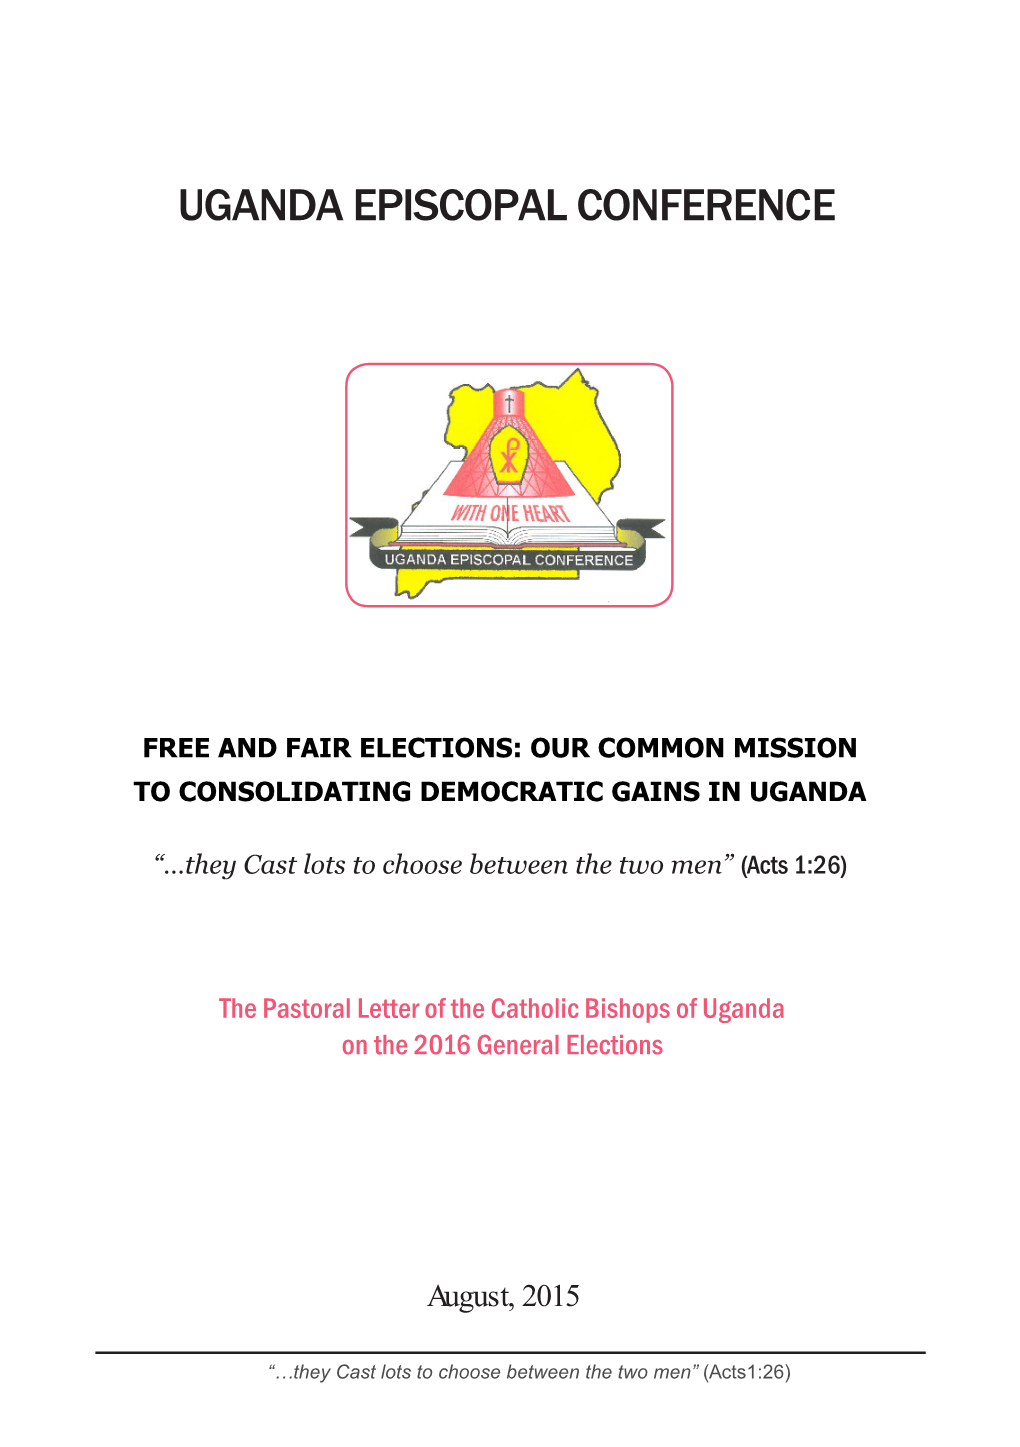 Uganda Episcopal Conference, Pastoral Letter on 2016 Elections